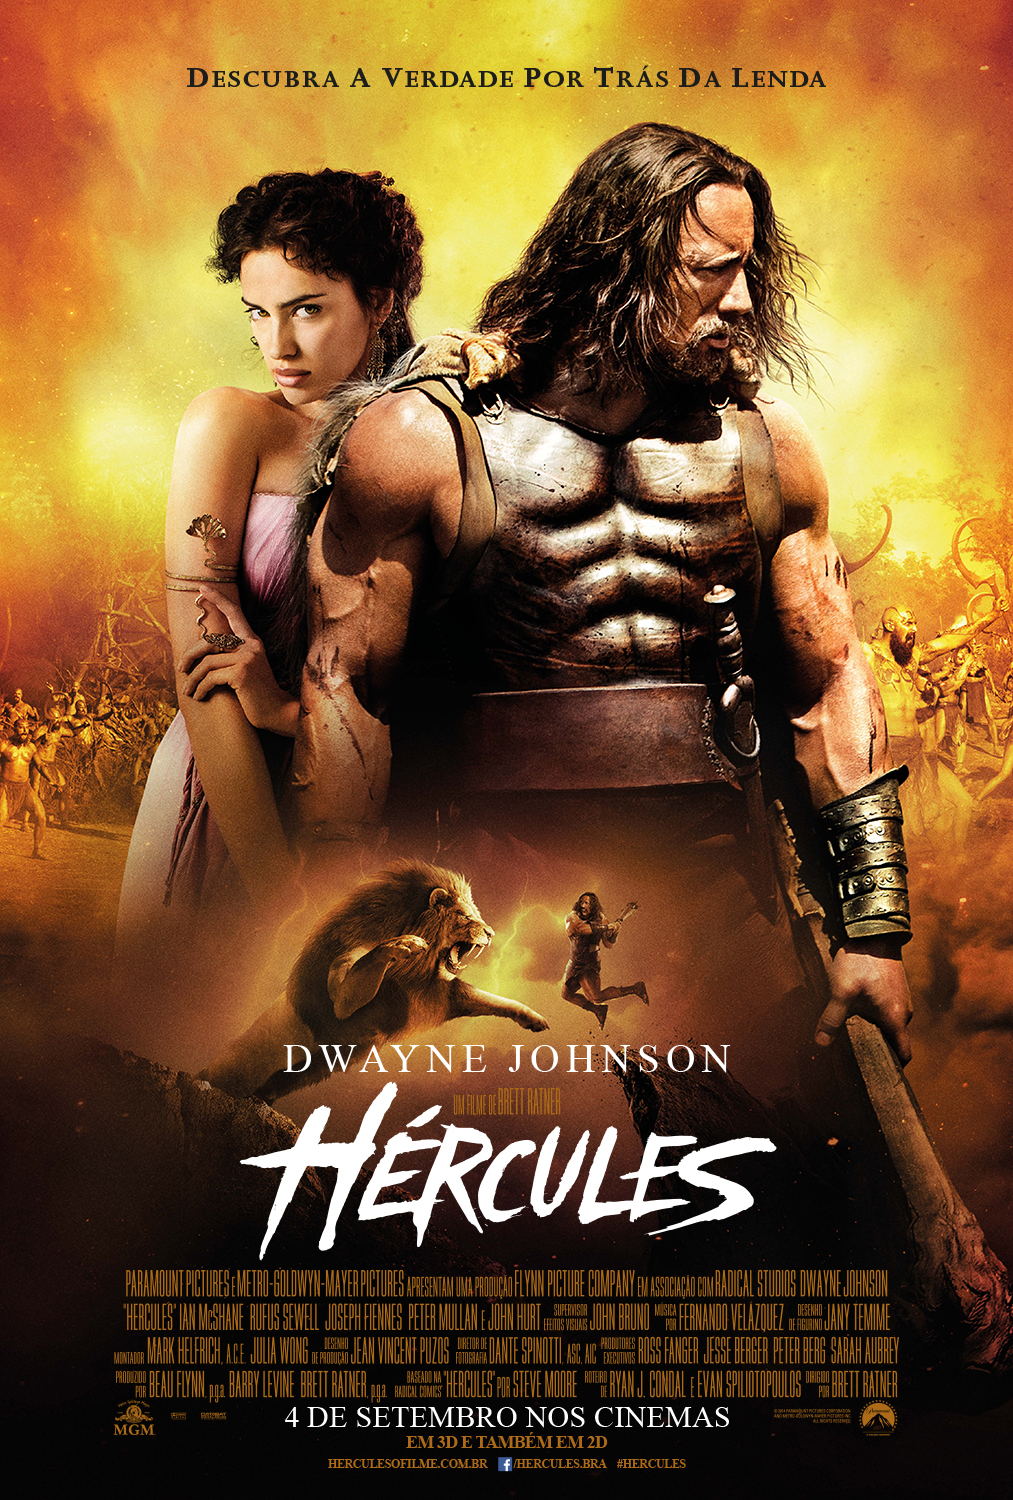 Hercules-Official Poster Banner PROMO XXLG NACIONAL-13JUNHO2014